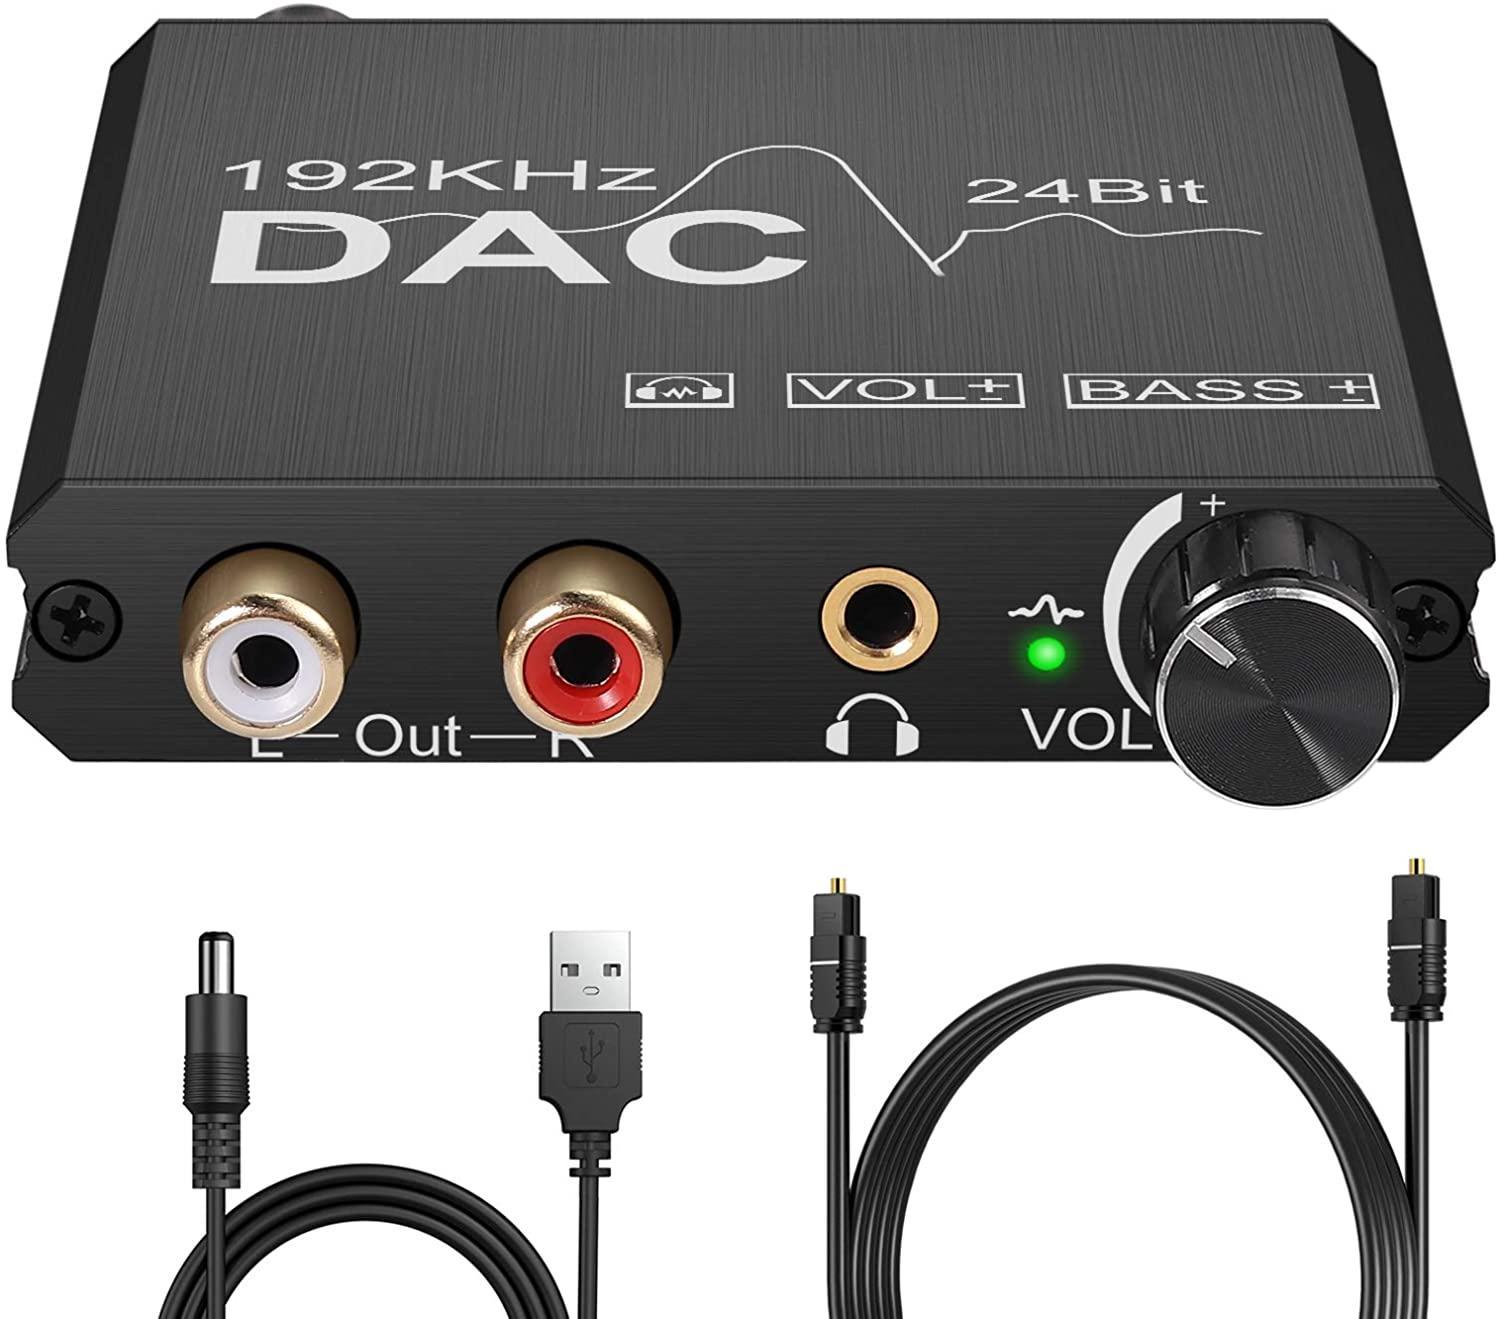 NÖRDIC DAC digital til analog konverter 192 kHz digital Toslink og Coaxial til analog L / R og 35 mm stereo med BASS og volumenkontrol